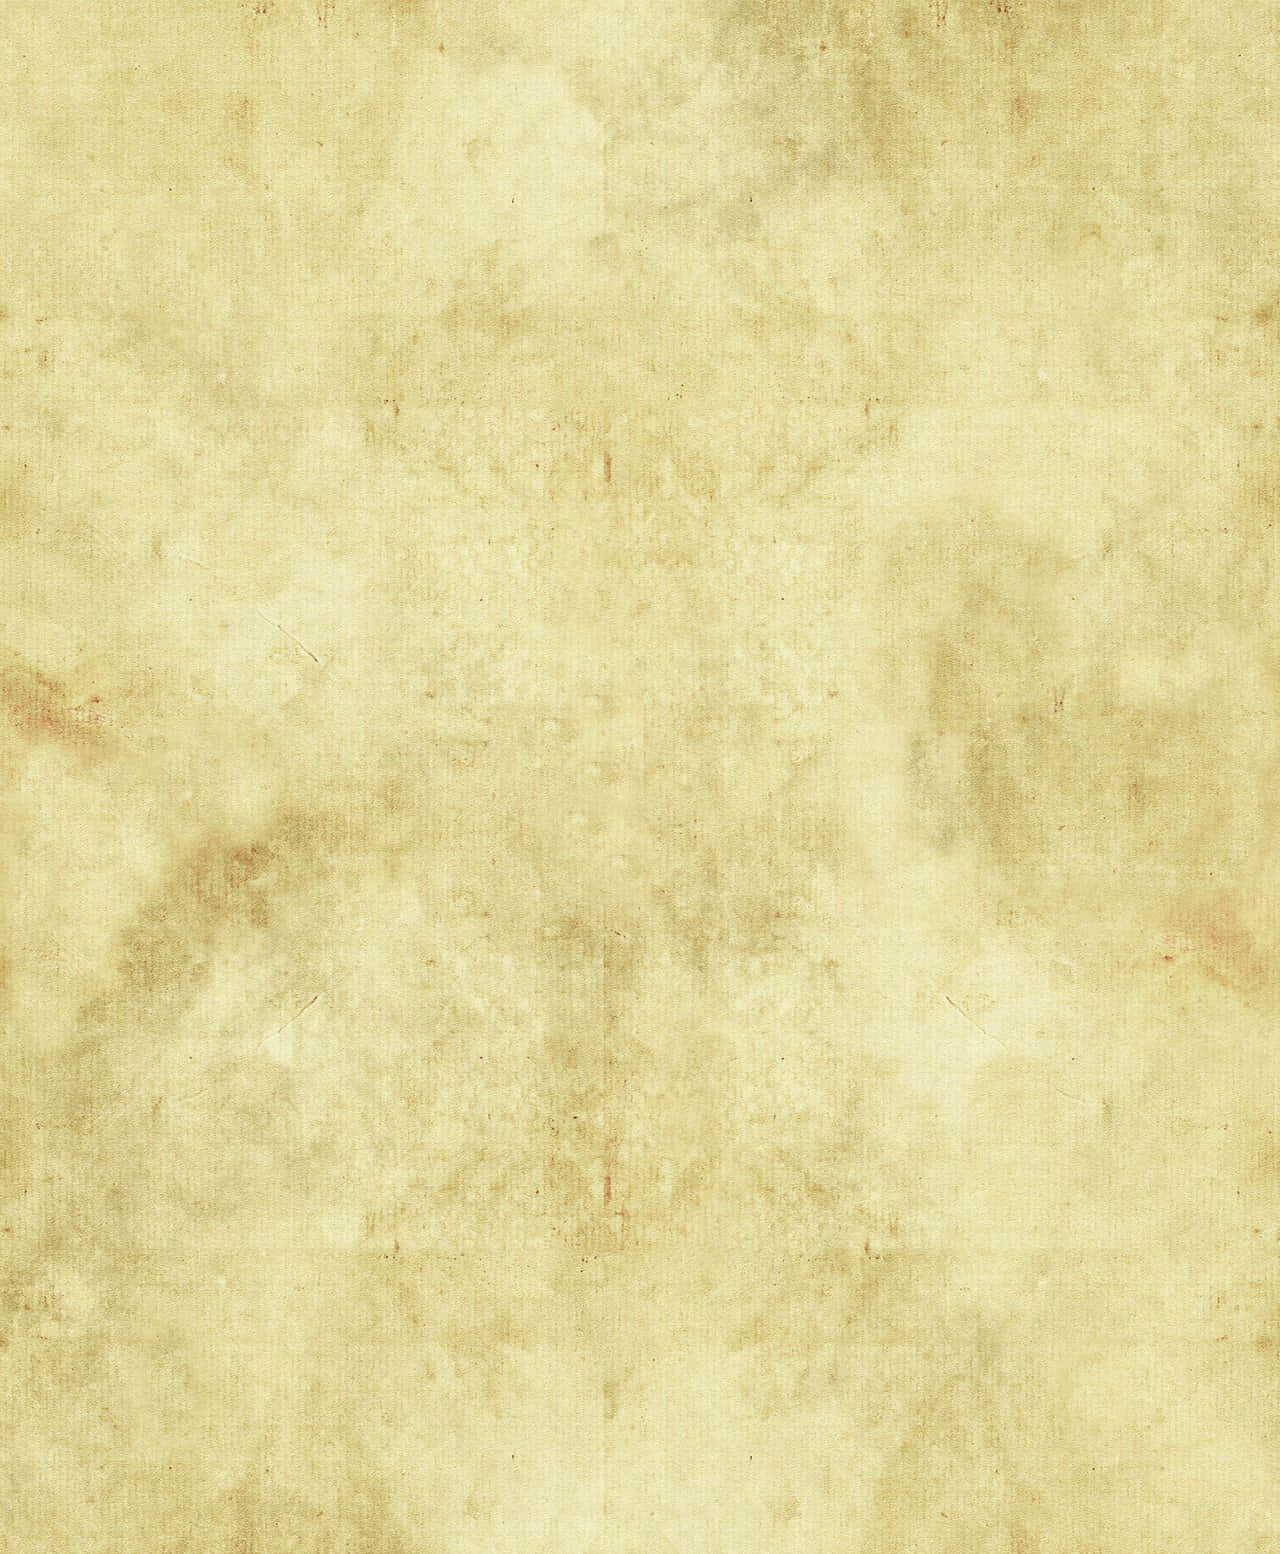 Parchment Paper Background